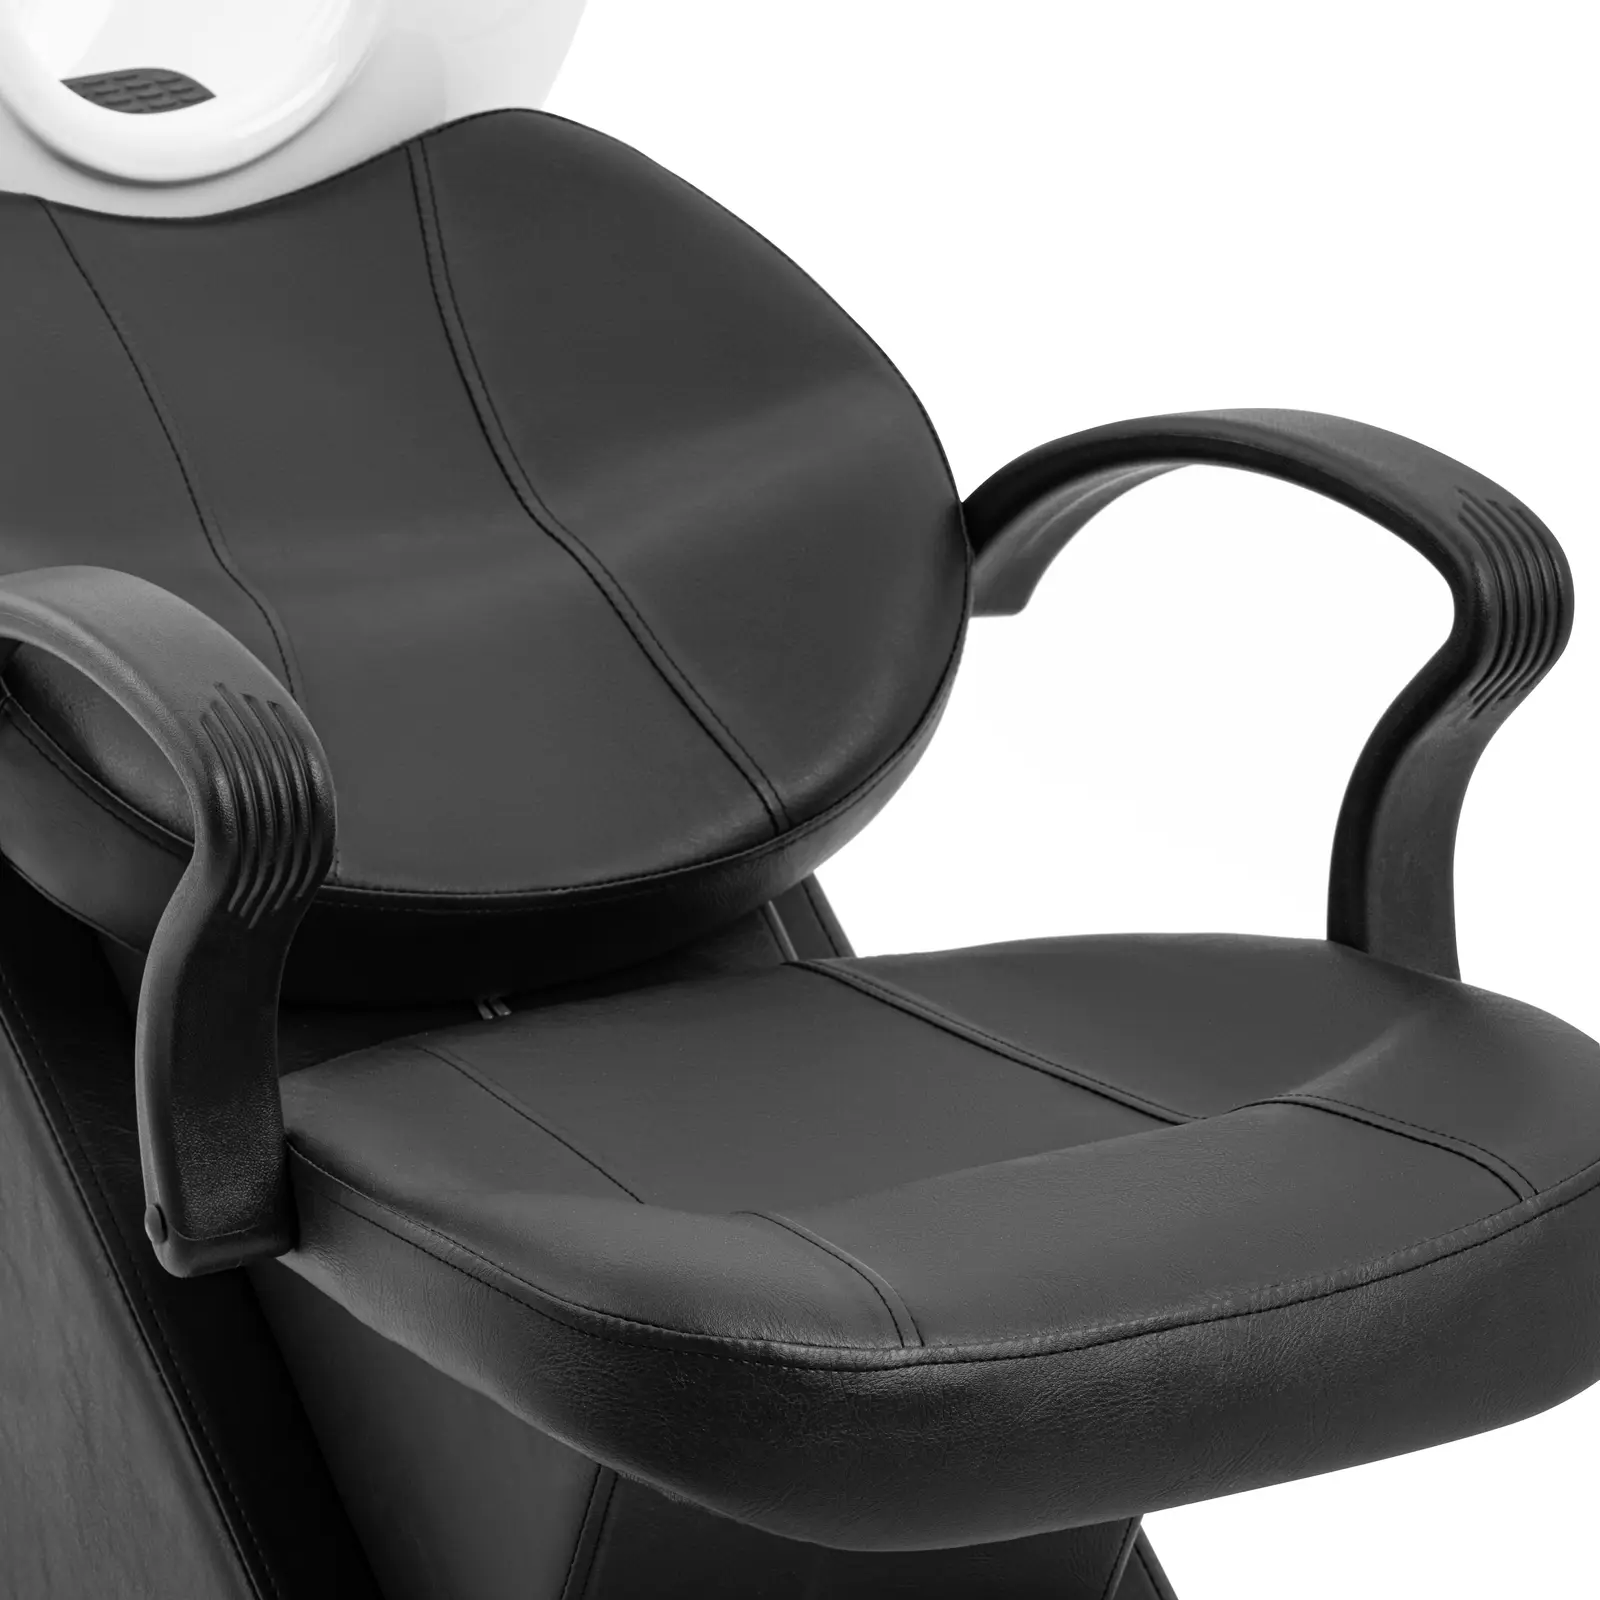 Friseur-Waschbecken mit Sessel - Maße Becken 600 x 450 x 150 mm - Schwarz/Weiß - 2